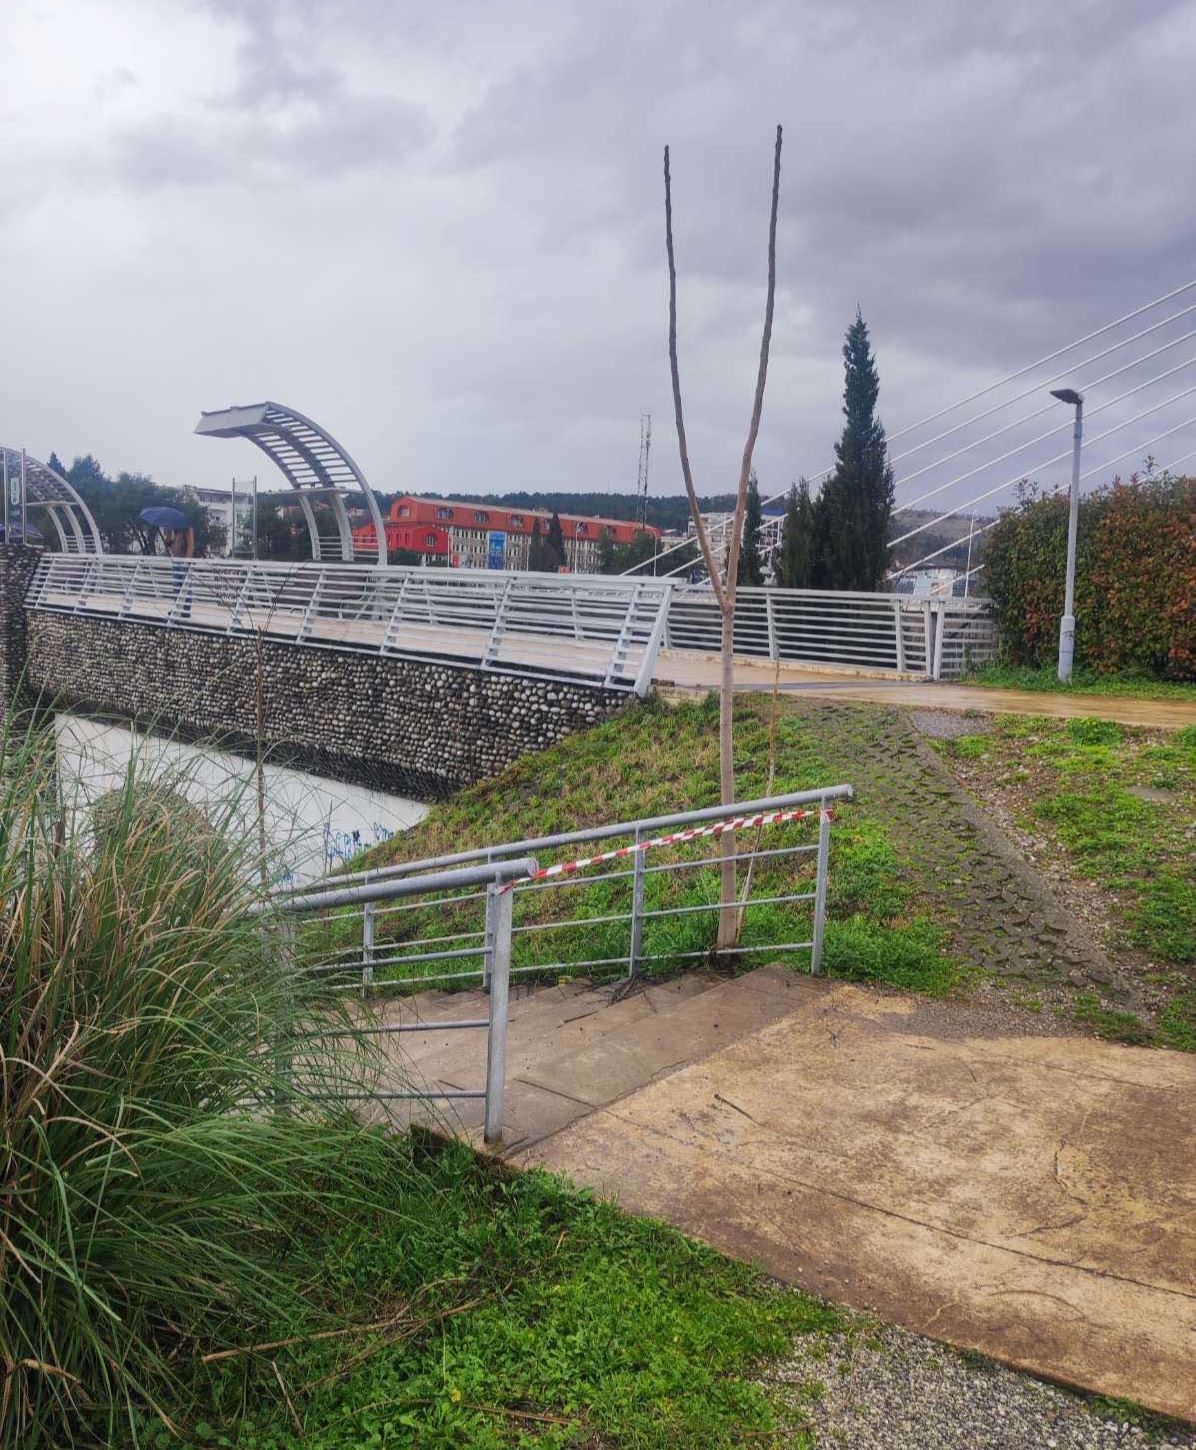 Šetalište uz Moraču i most na Sastavcima van upotrebe do poboljšanja vremenskih uslova